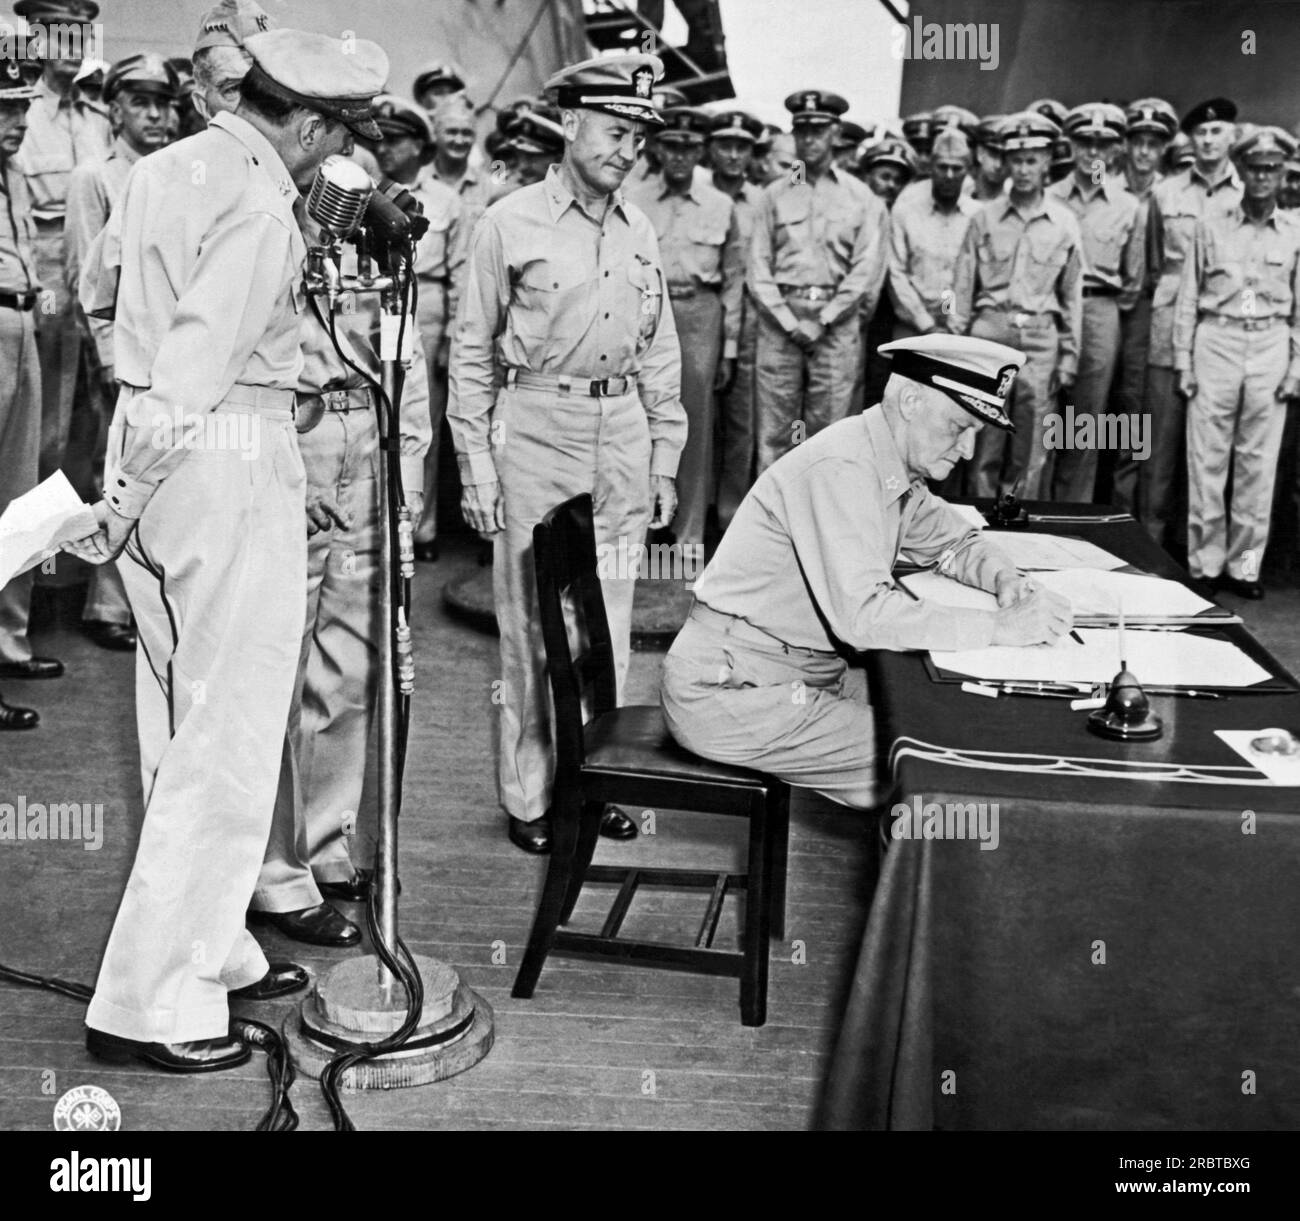 Tokyo, Japon : 1 septembre 1945 l'amiral Chester Nimitz signe pour les États-Unis lors de la cérémonie de reddition japonaise à bord de l'USS Missouri dans la baie de Tokyo. Le général de l'Armée Douglas MacArthur se tient à gauche au micro. Banque D'Images